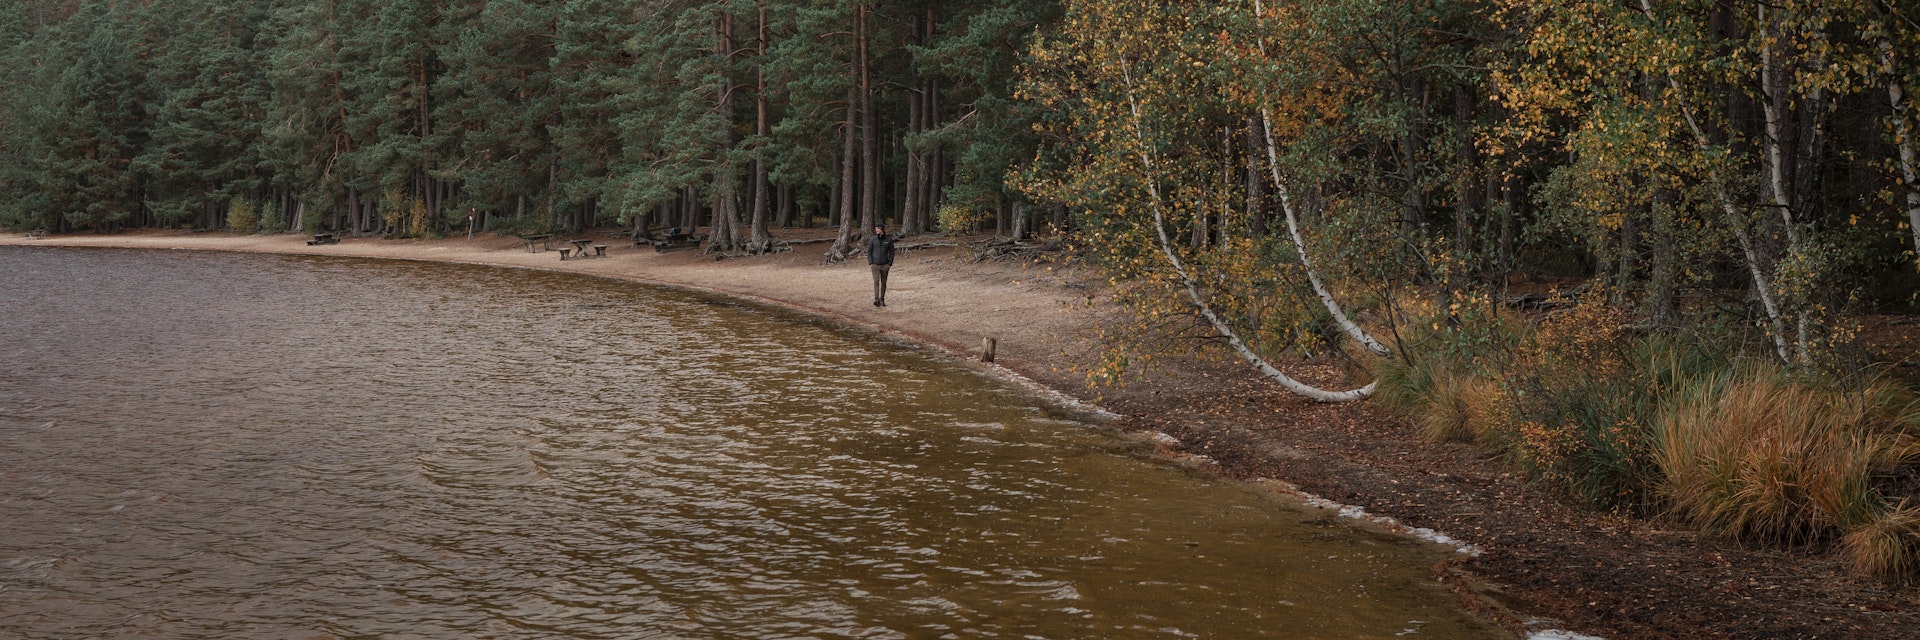 Tiveden National Park in Sweden.